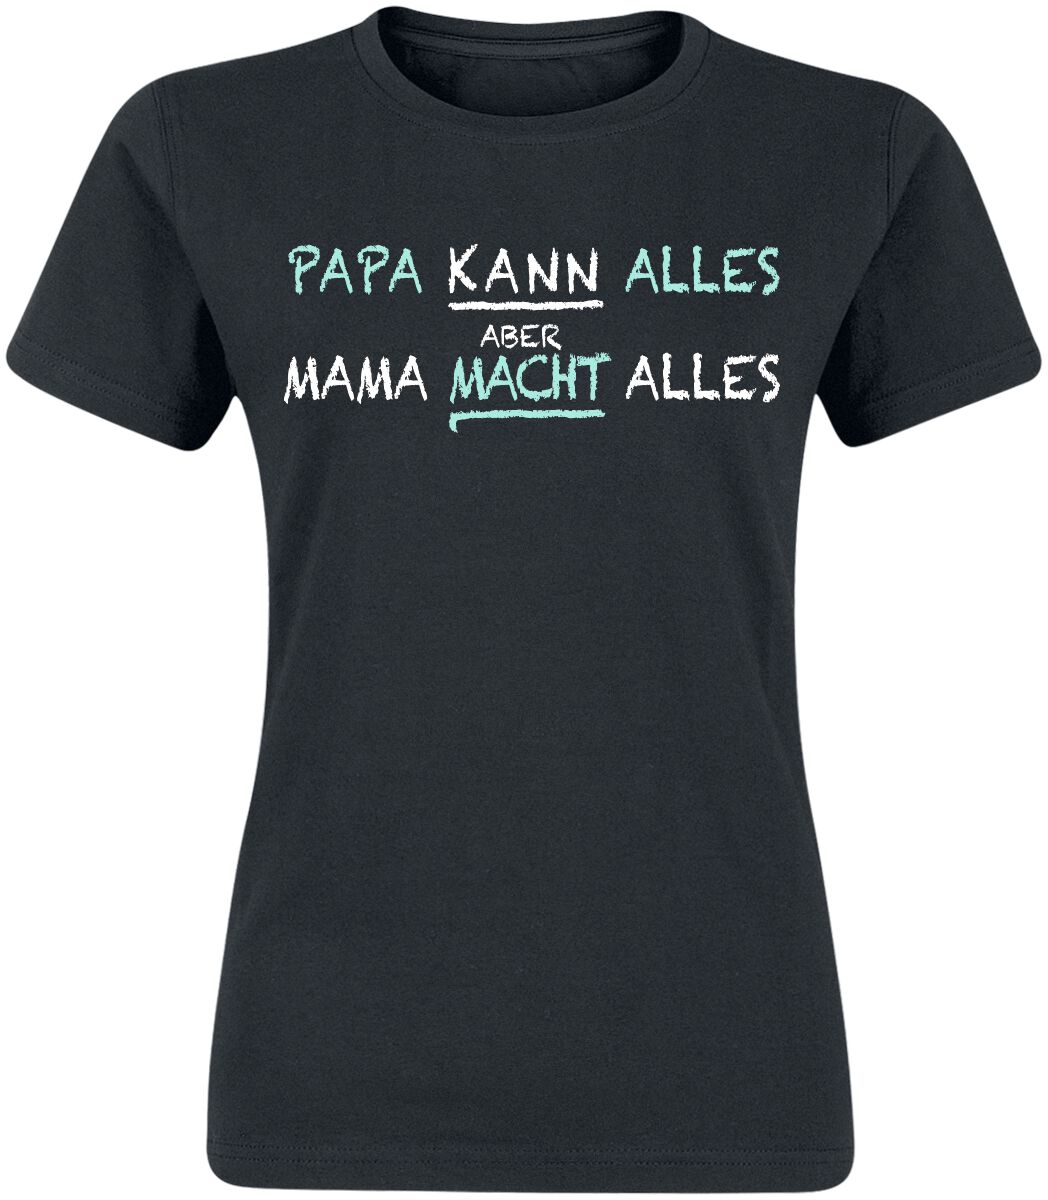 Familie & Freunde T-Shirt - Mama macht alles - S bis 3XL - für Damen - Größe M - schwarz